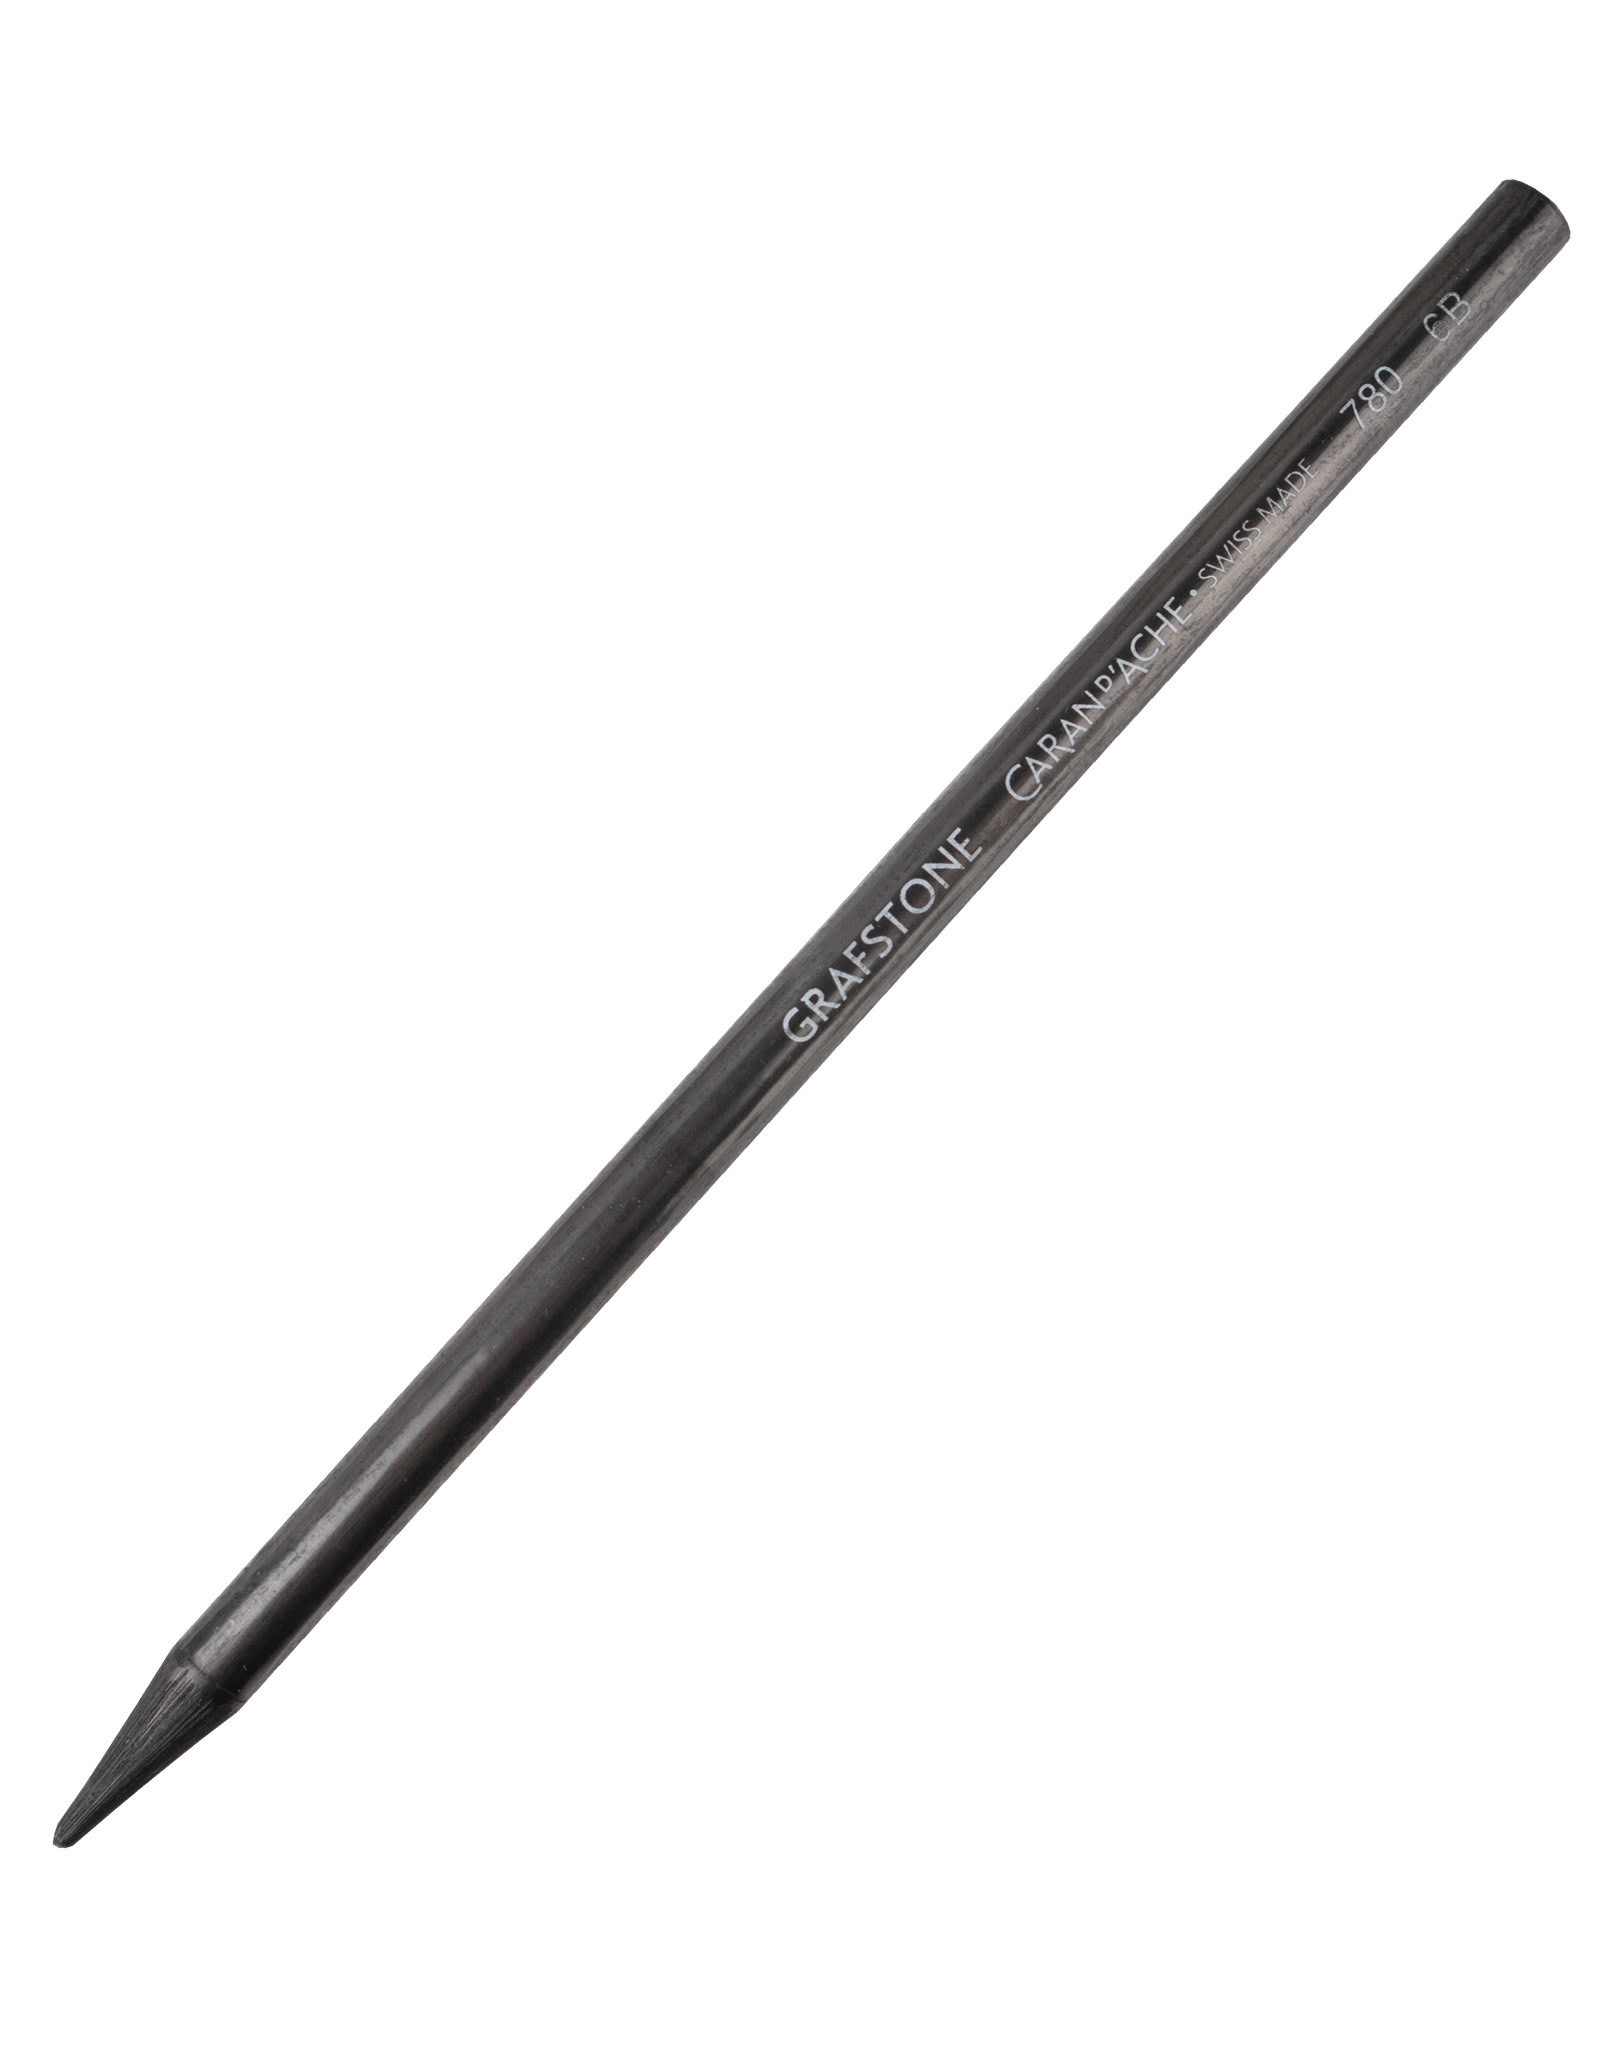 Caran d'Ache Grafstone Pure Graphite Pencil 6B